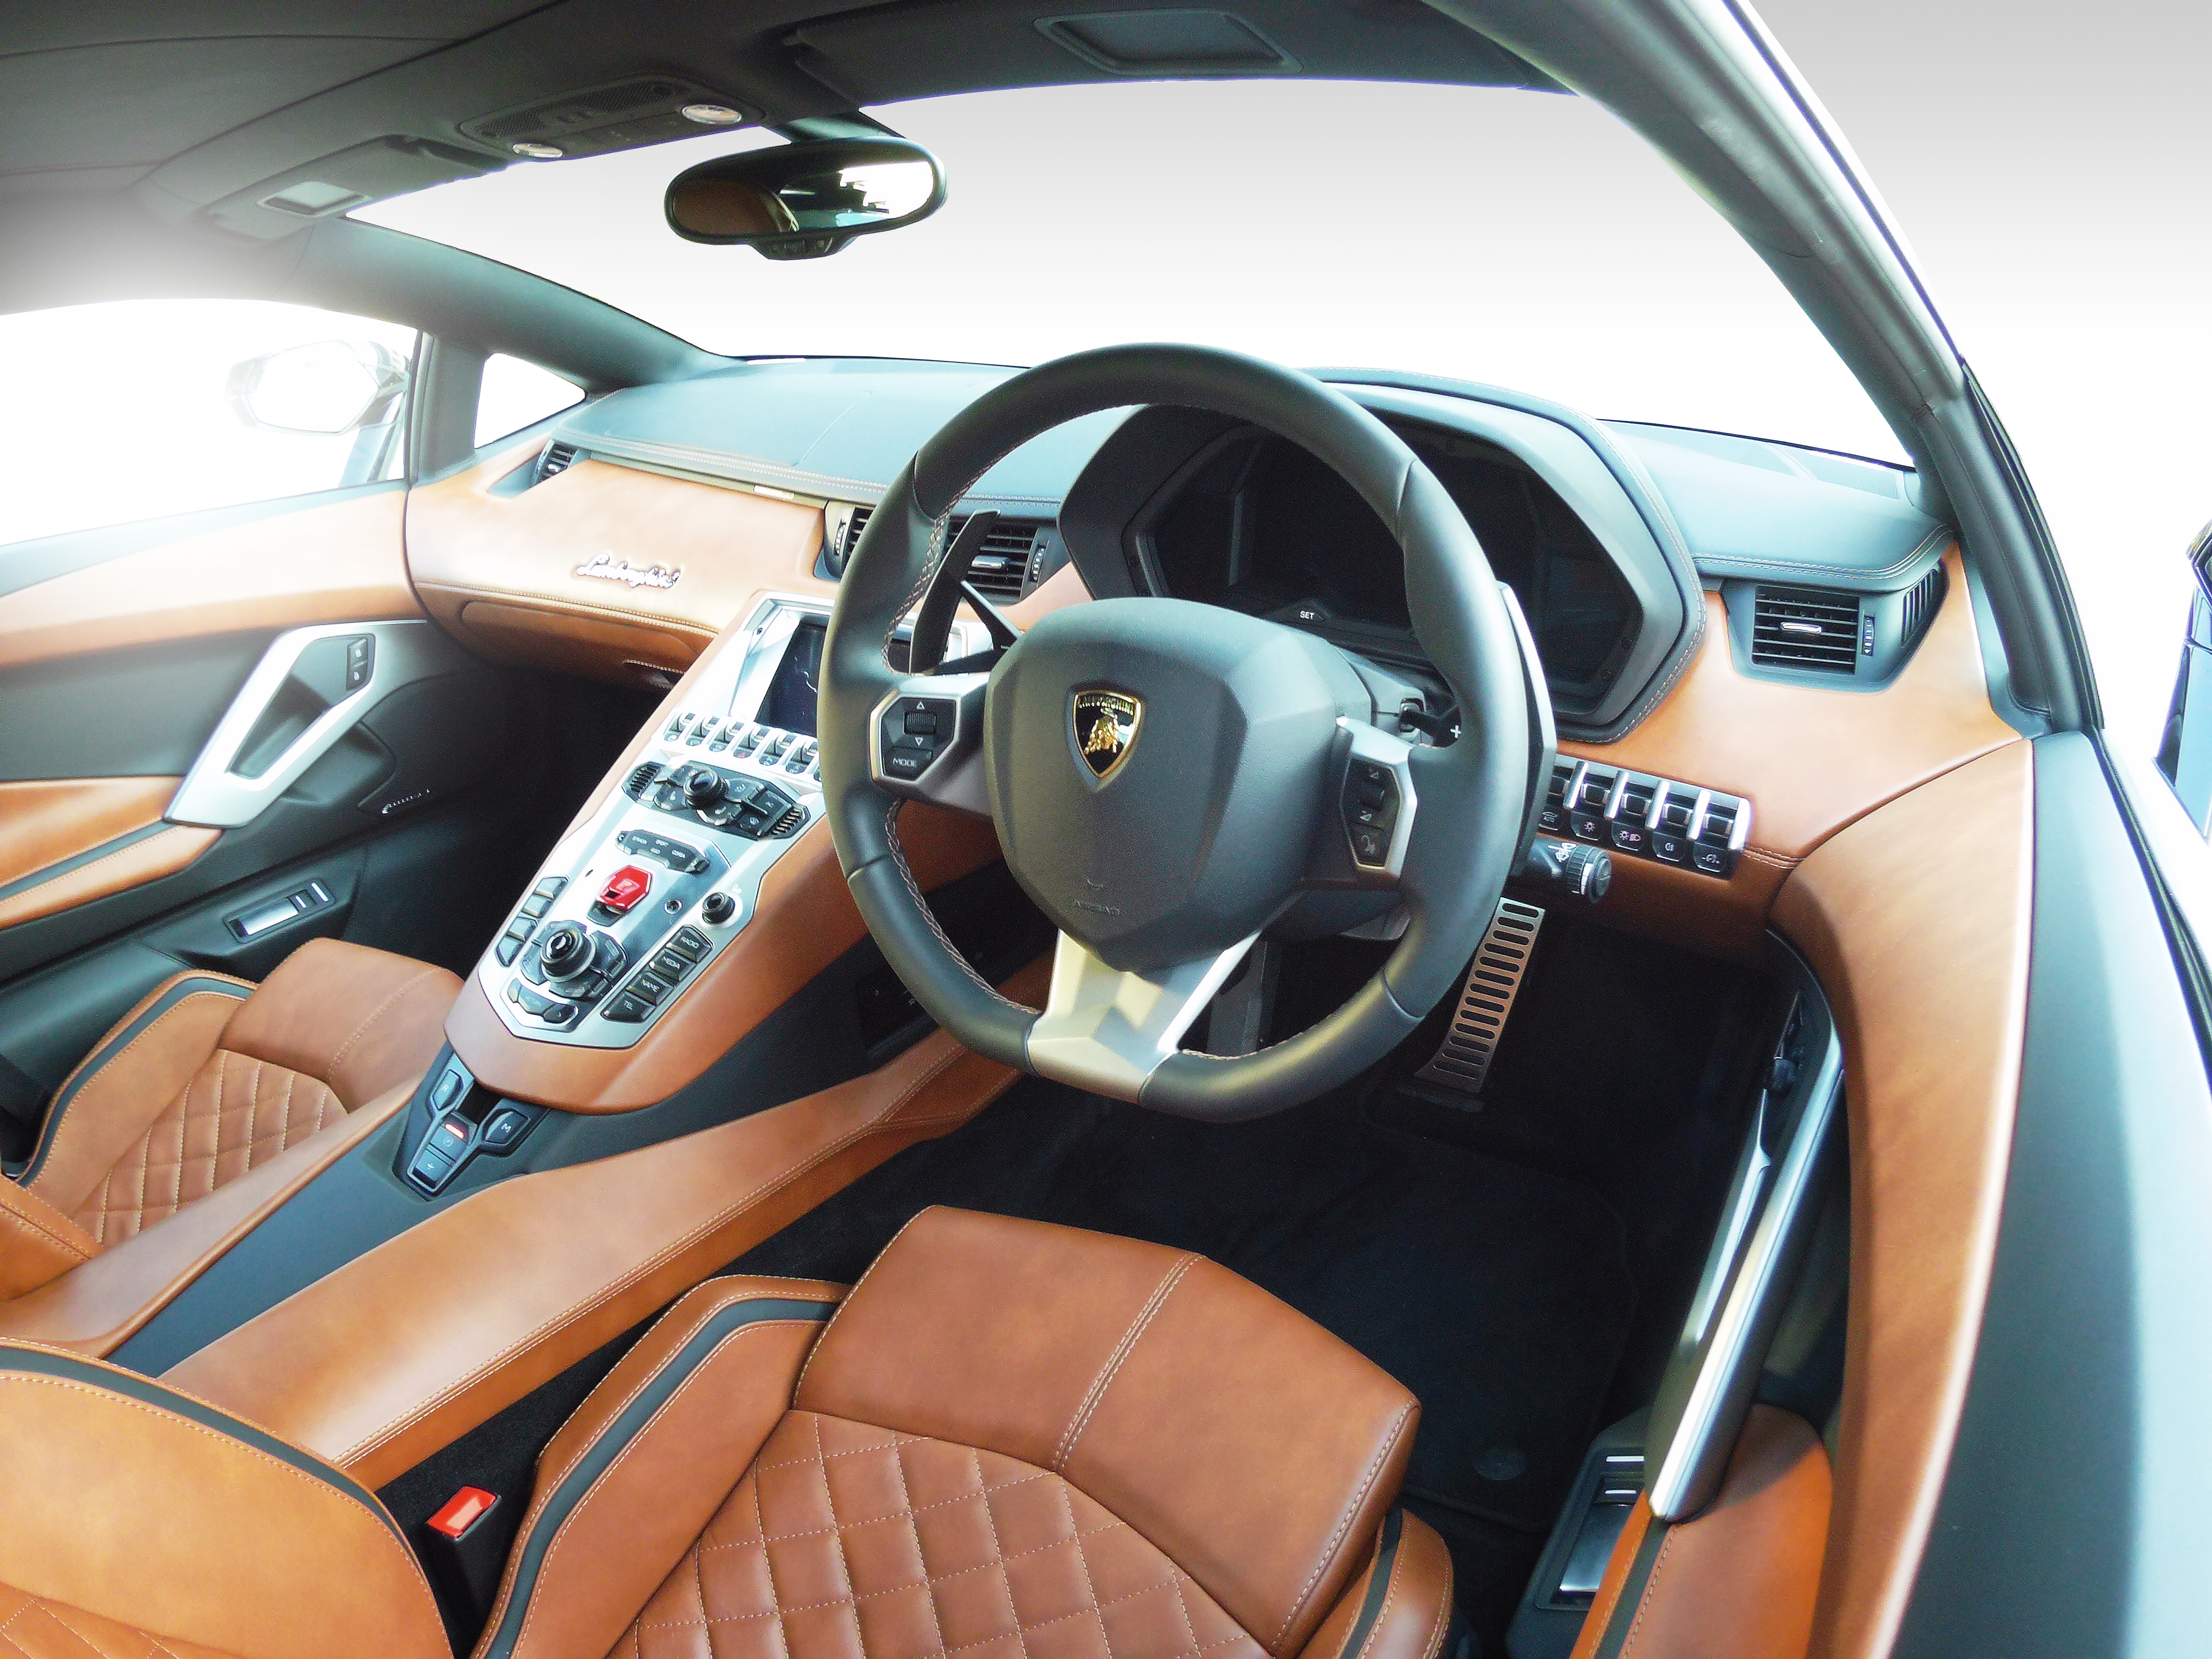 Driven | Lamborghini Aventador S